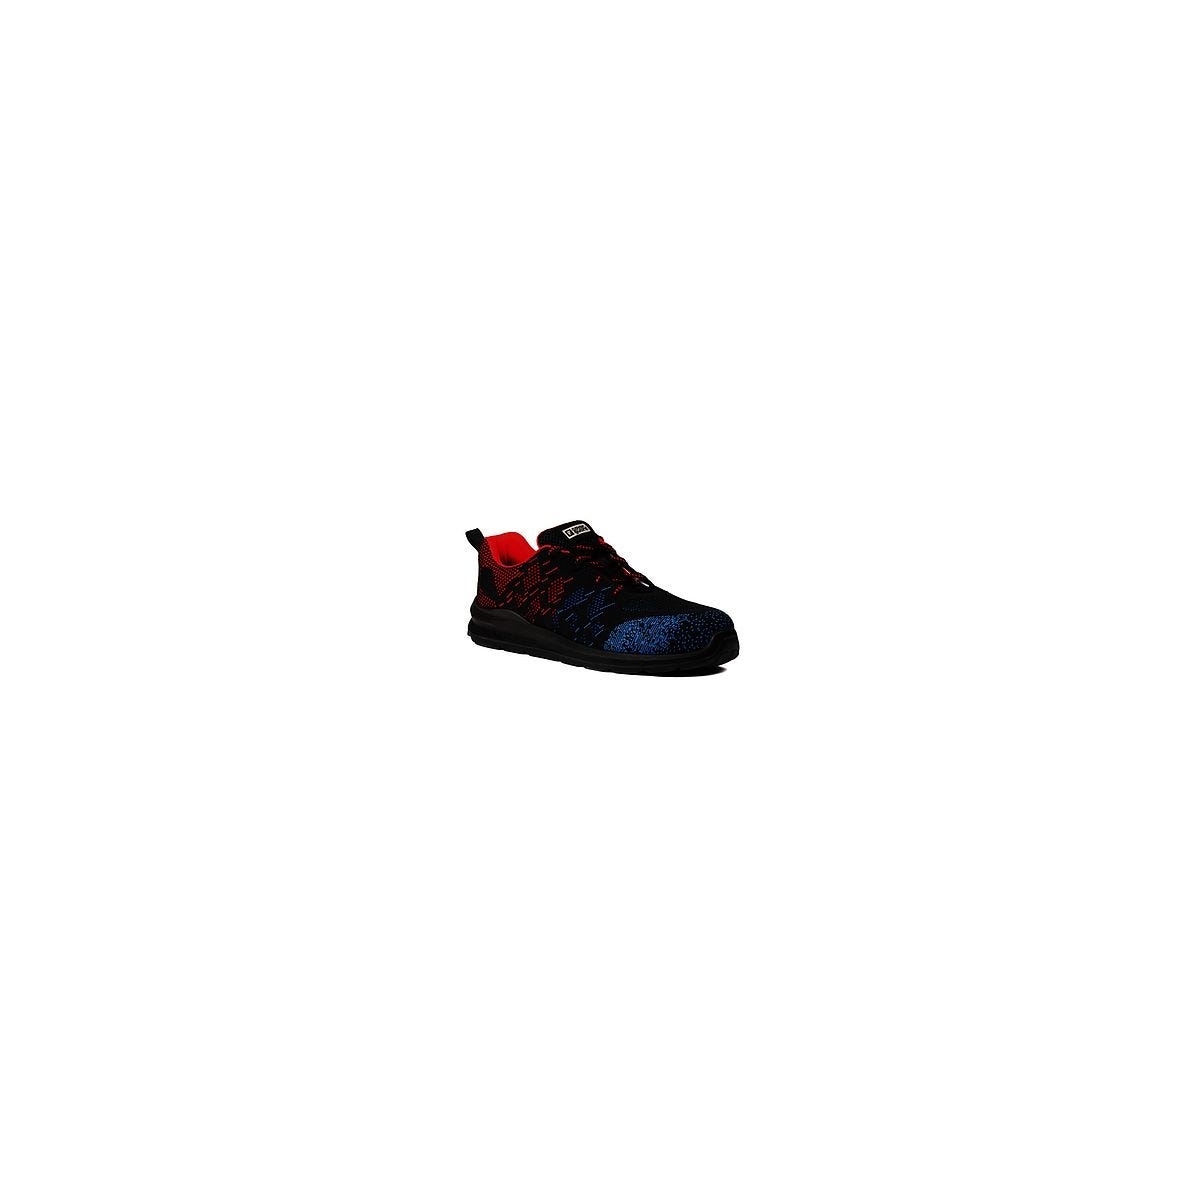 Chaussures de sécurité OTAVITE S1P Basse Noir/Rouge/Bleu - COVERGUARD - Taille 41 0